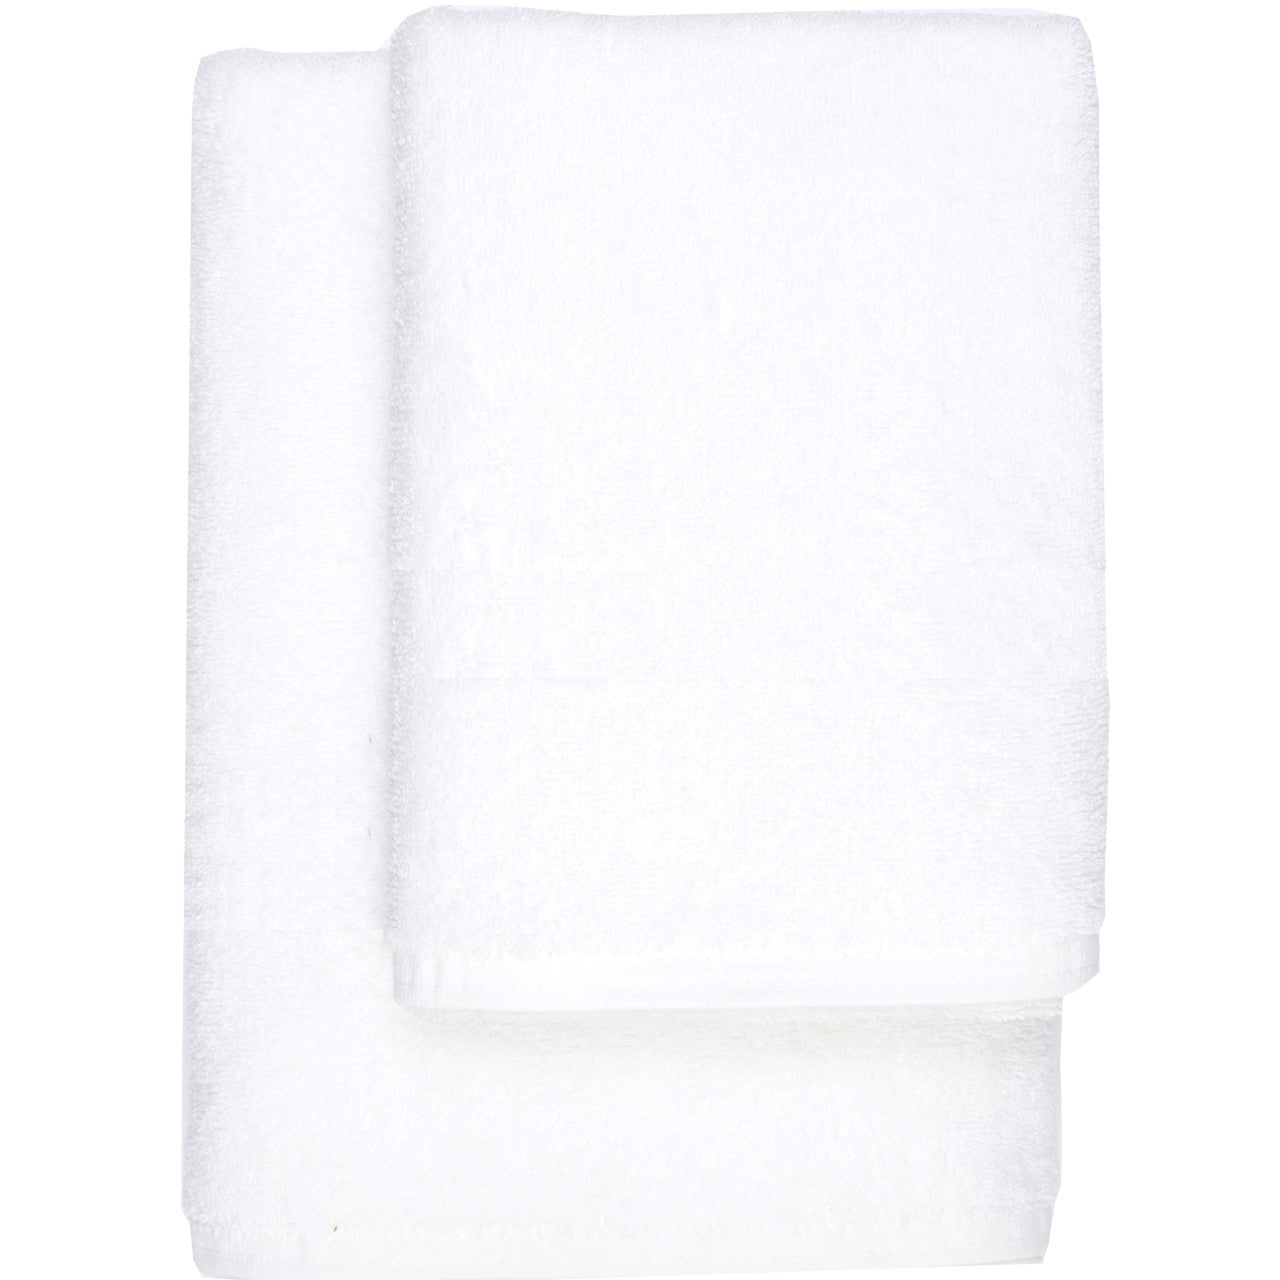 Πετσέτα Μονόχρωμη 550gr από την εταιρεία Borea Home Textiles